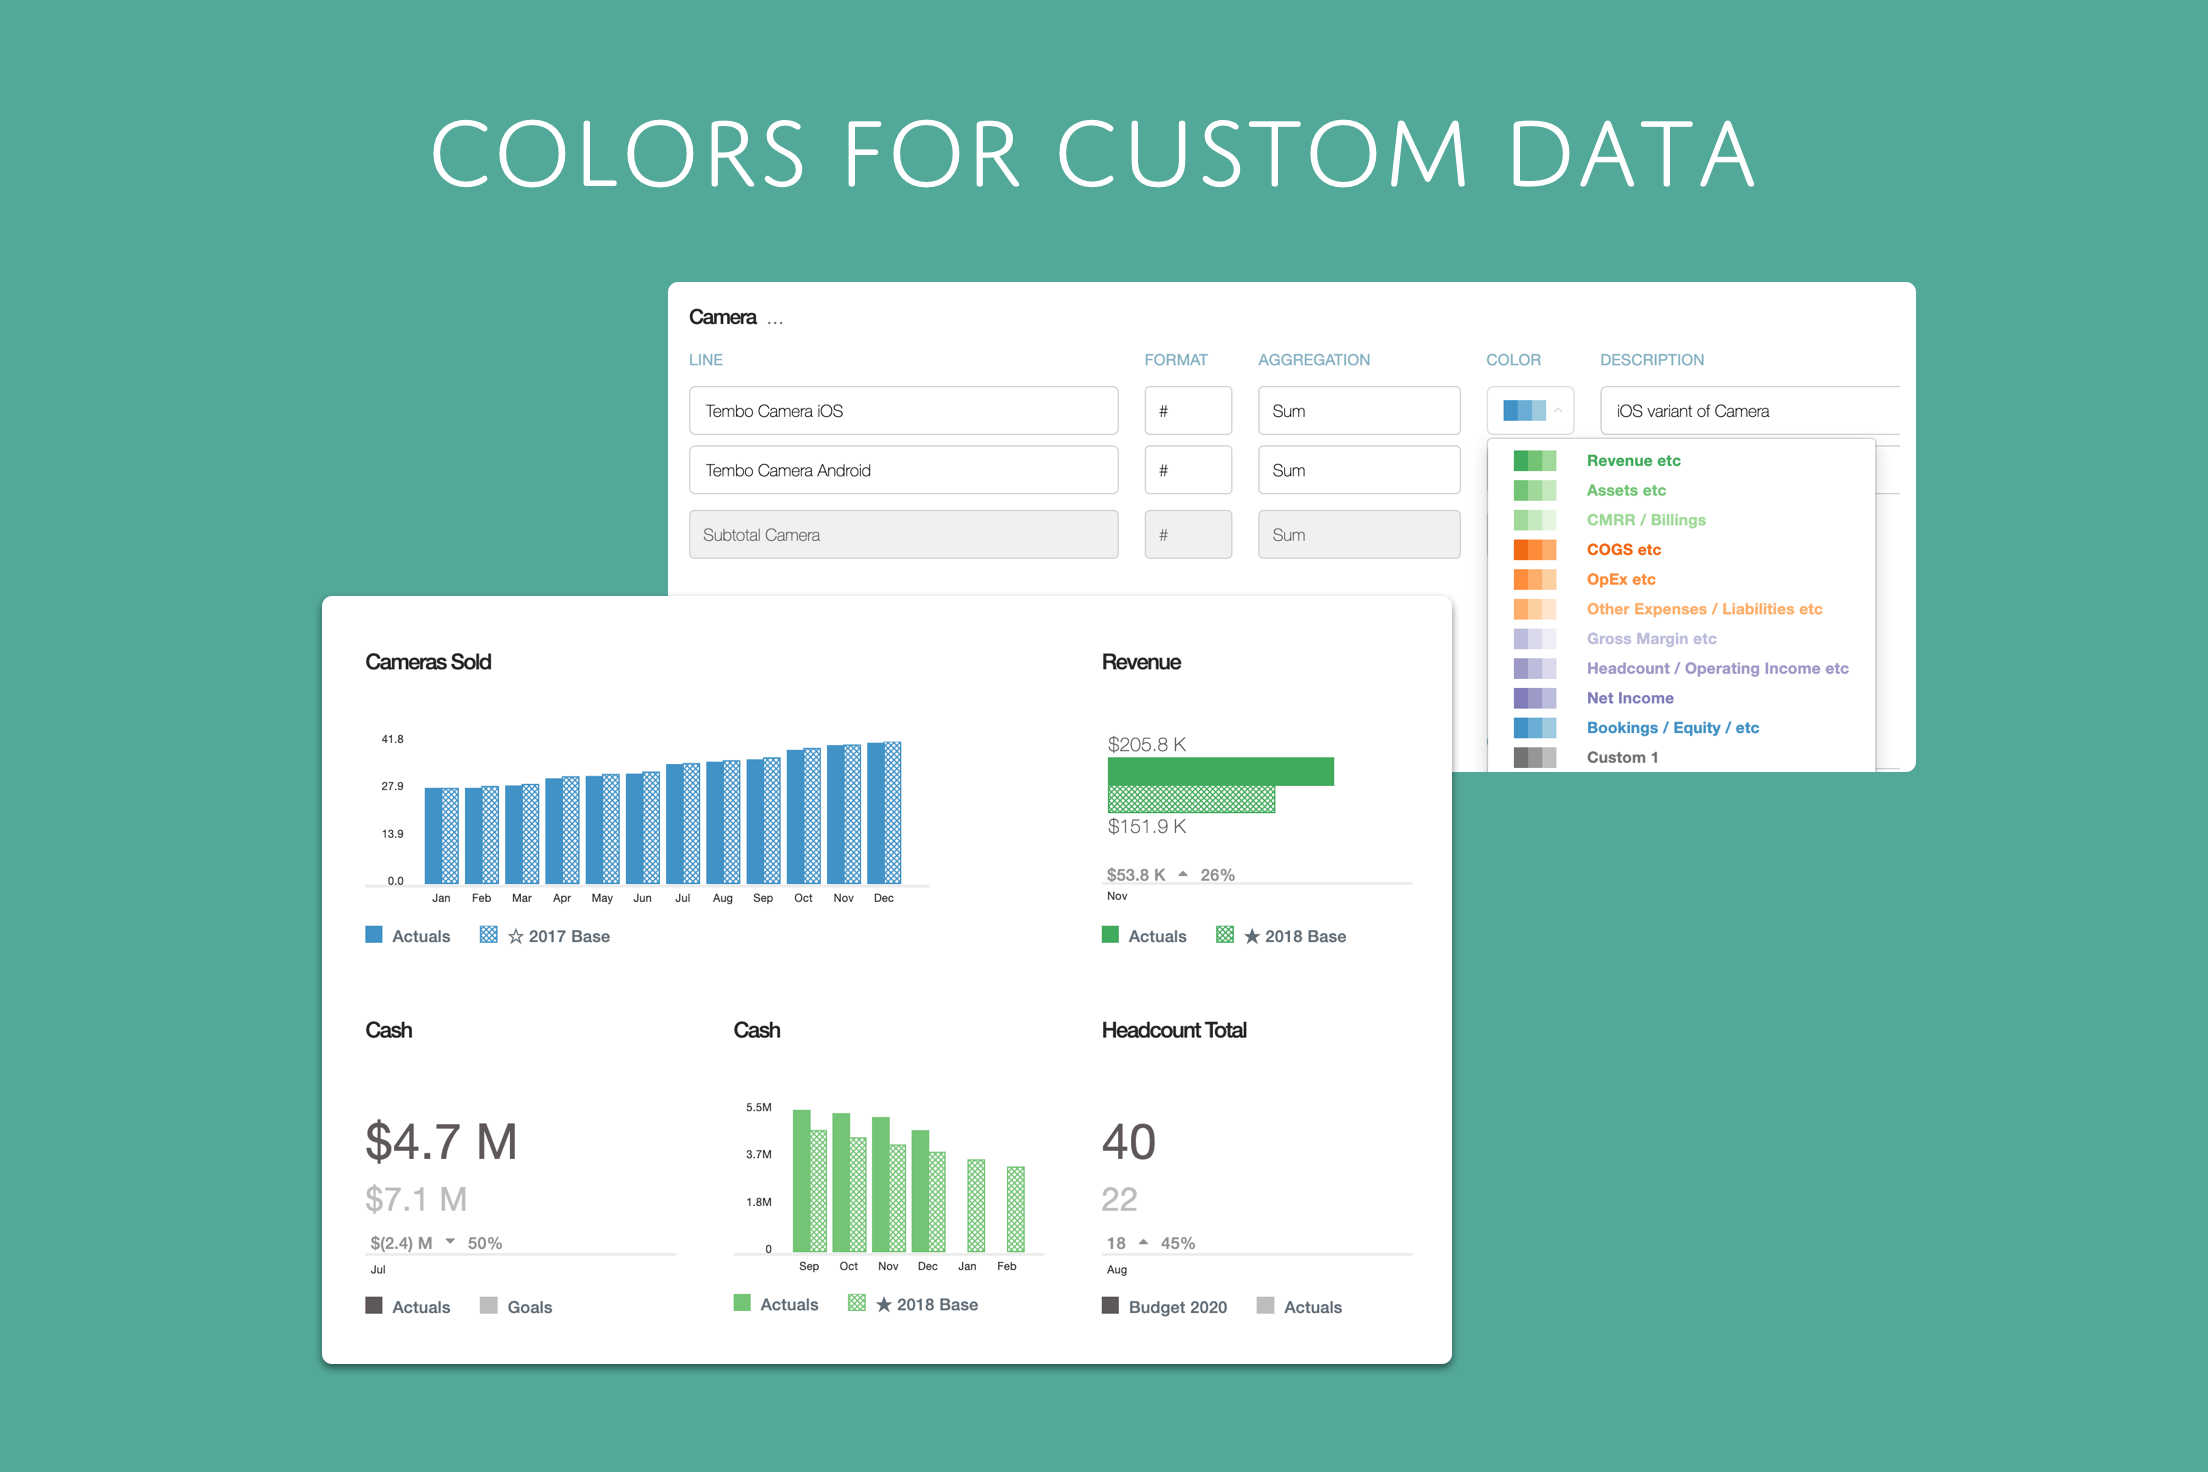 Colors for Custom Data